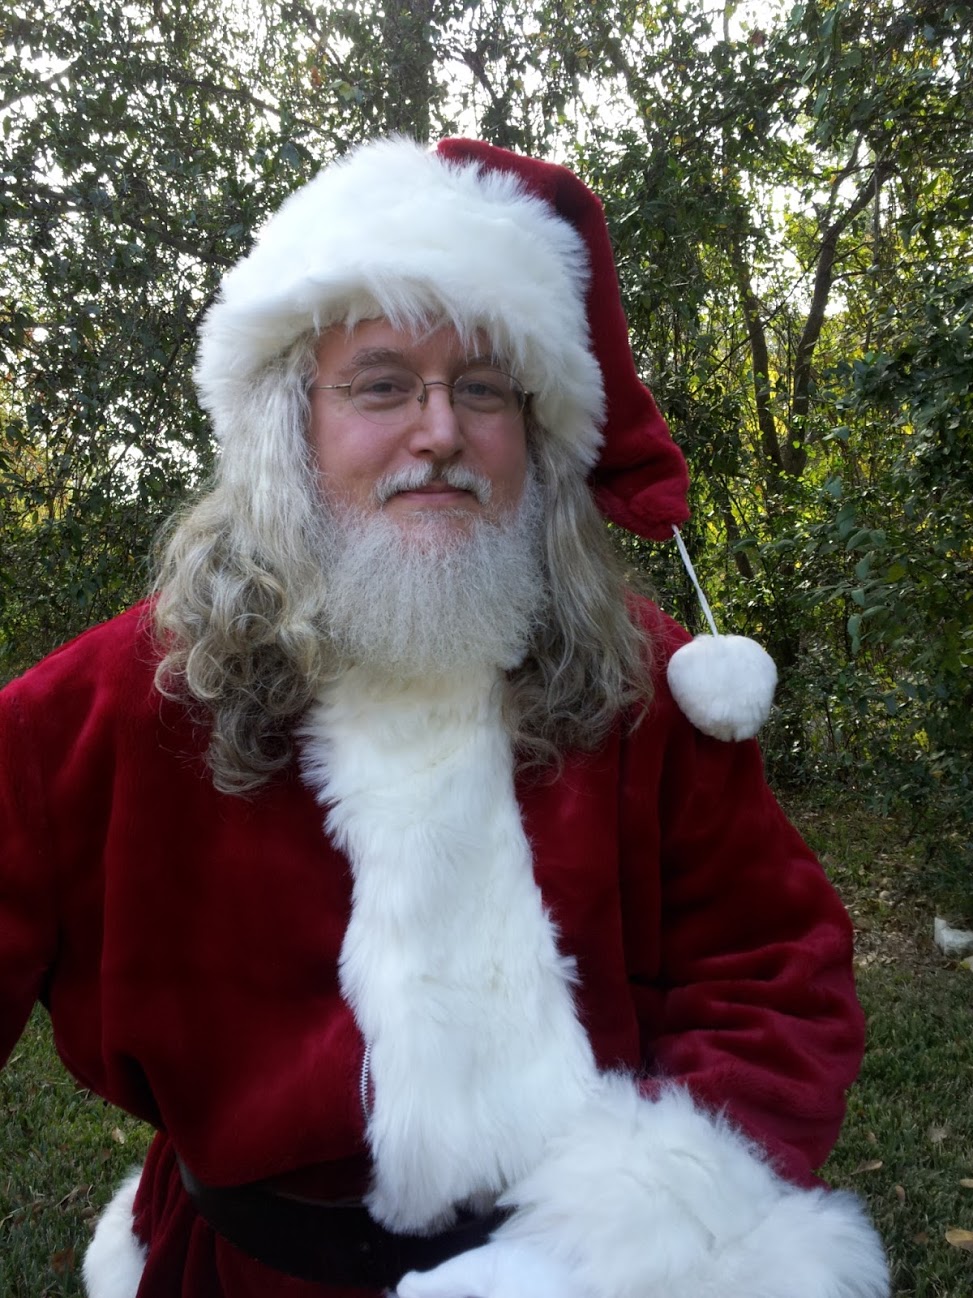 Mark Connelly Wilson as Santa